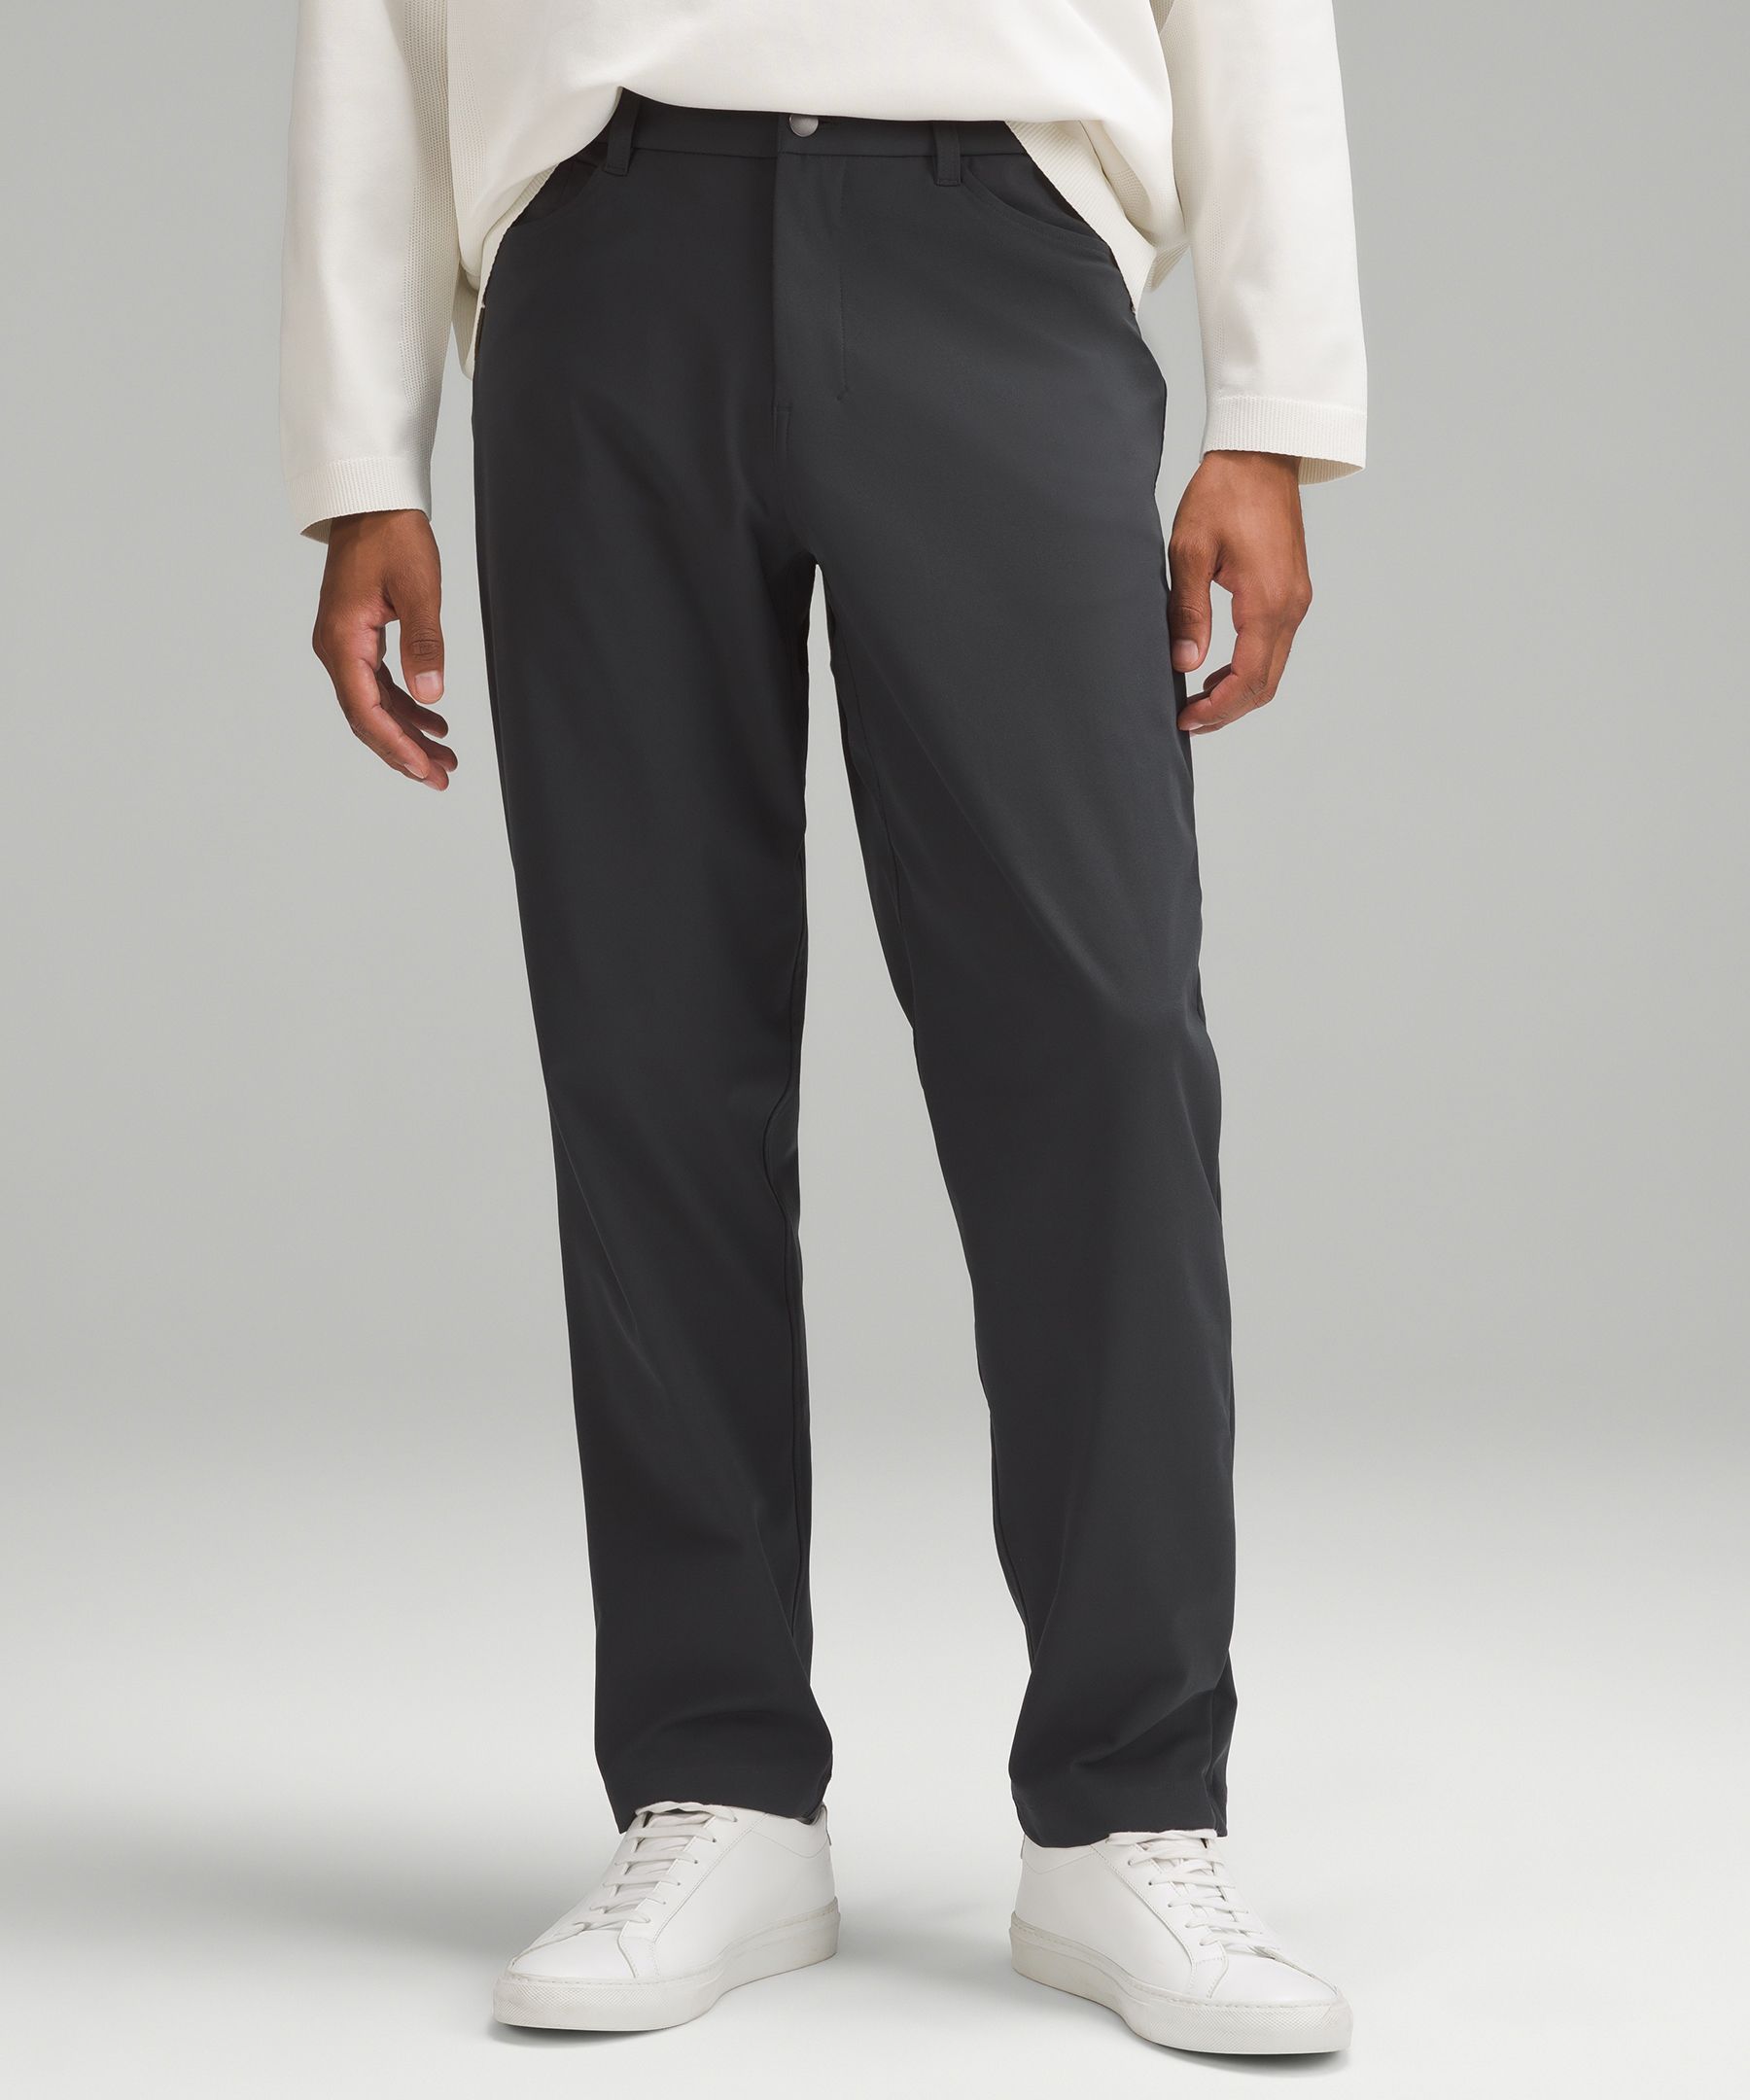 ABC Classic-Fit 5 Pocket Pant 32L *Warpstreme, Men's Trousers, lululemon